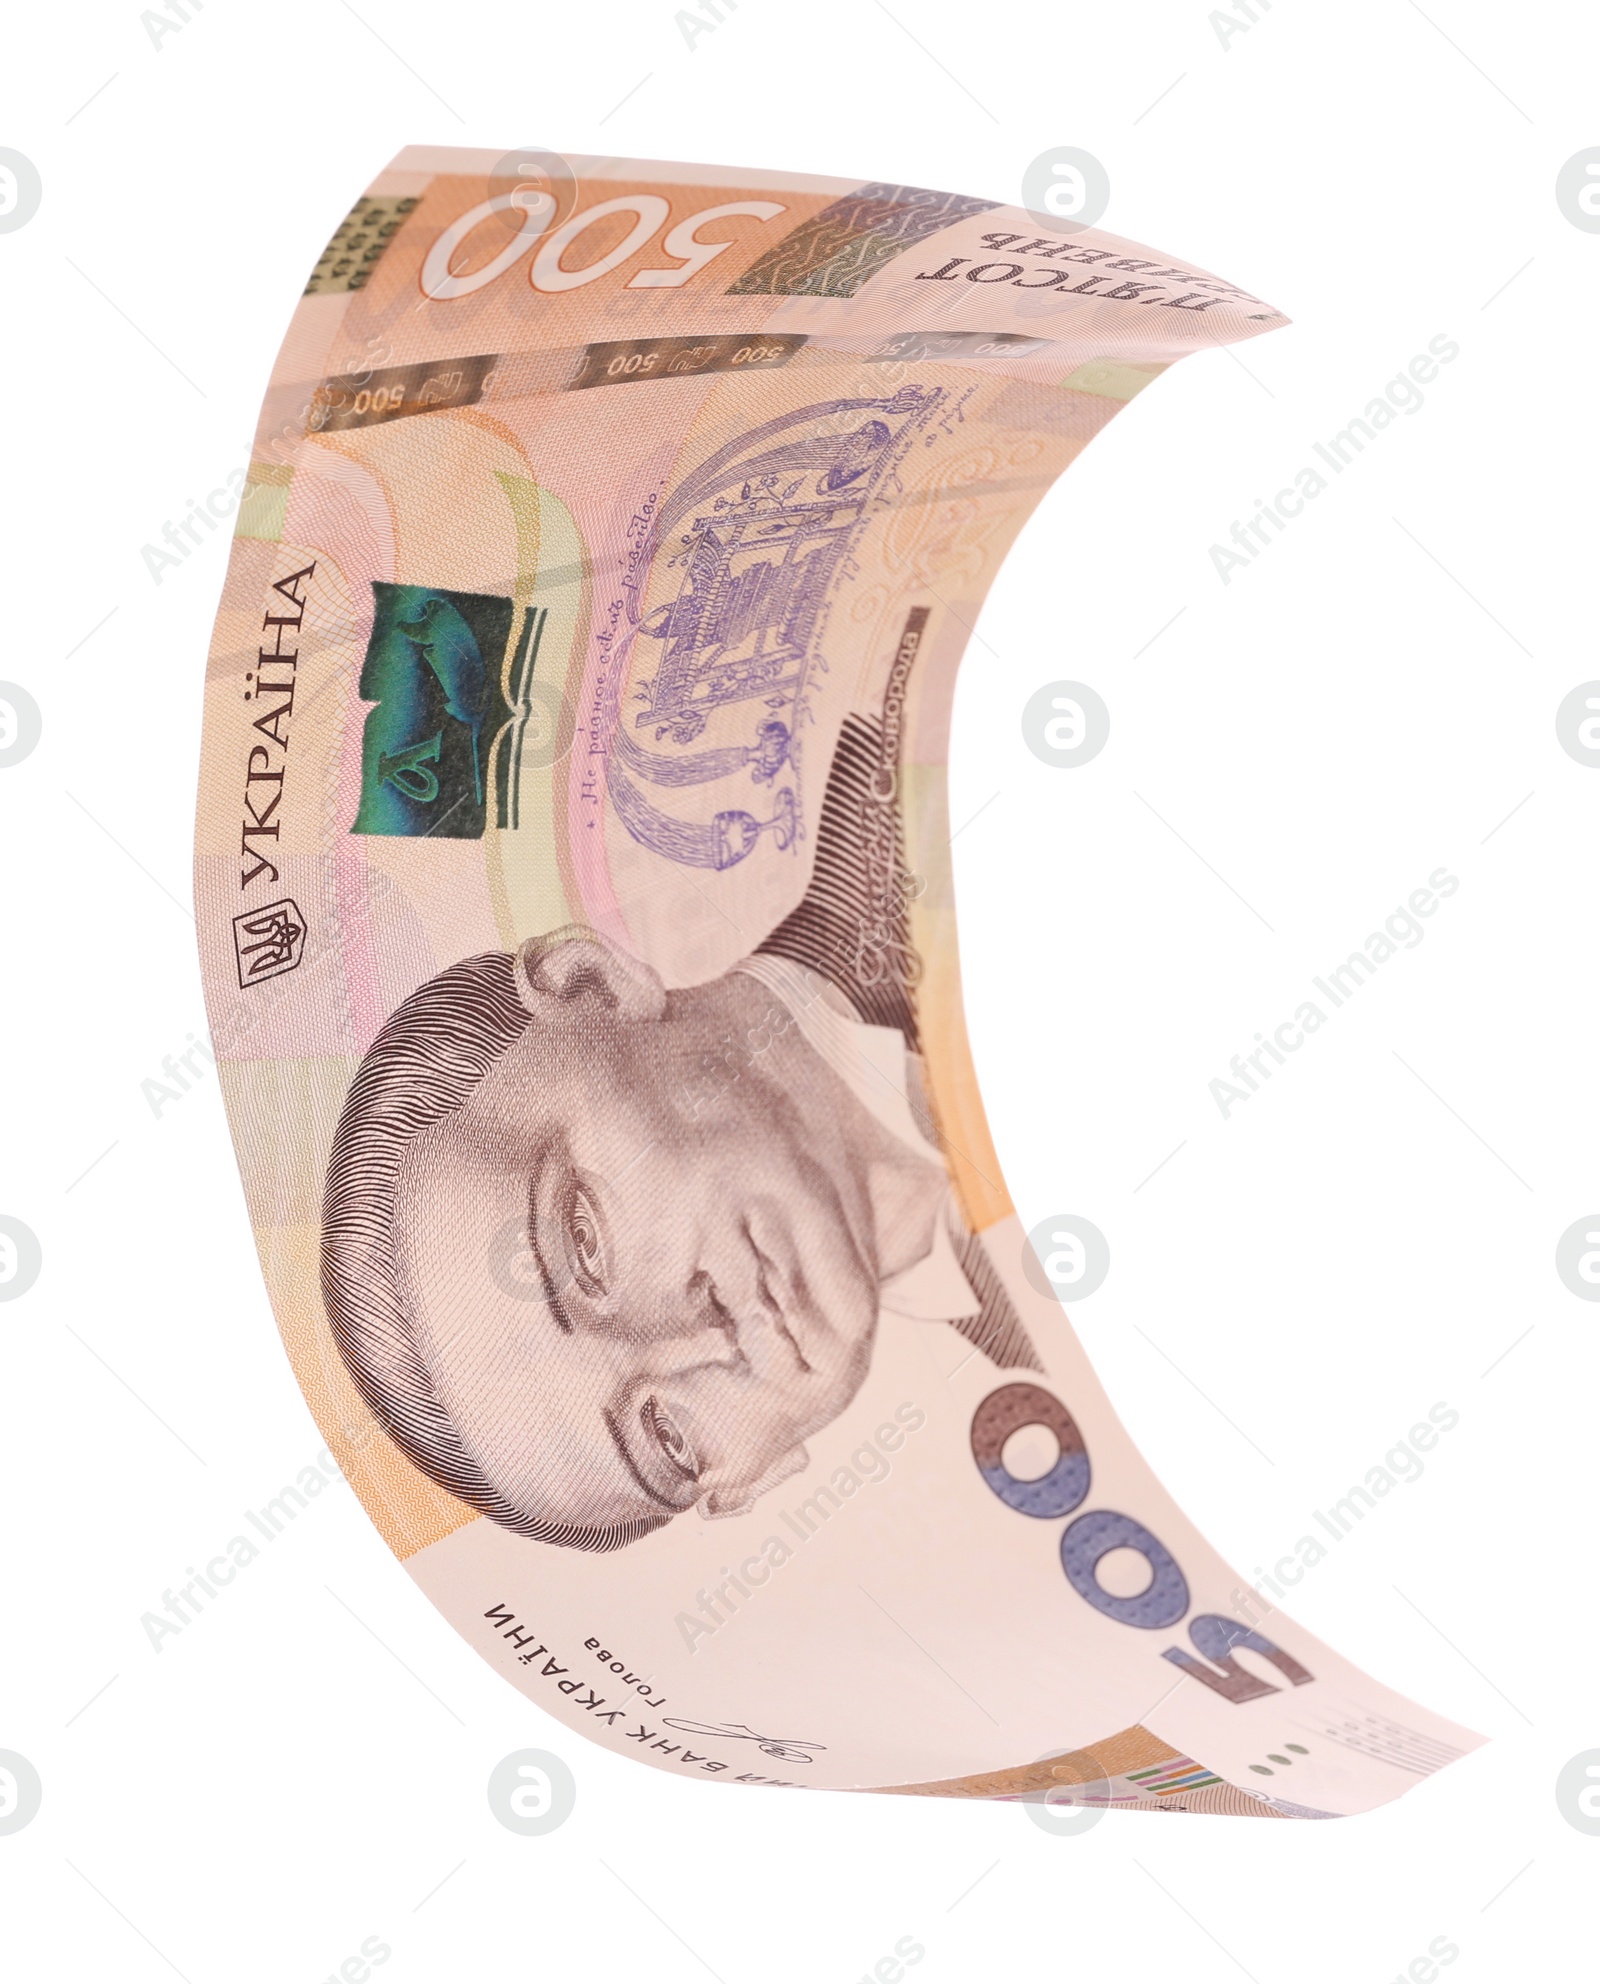 Photo of 500 Ukrainian Hryvnia banknote on white background